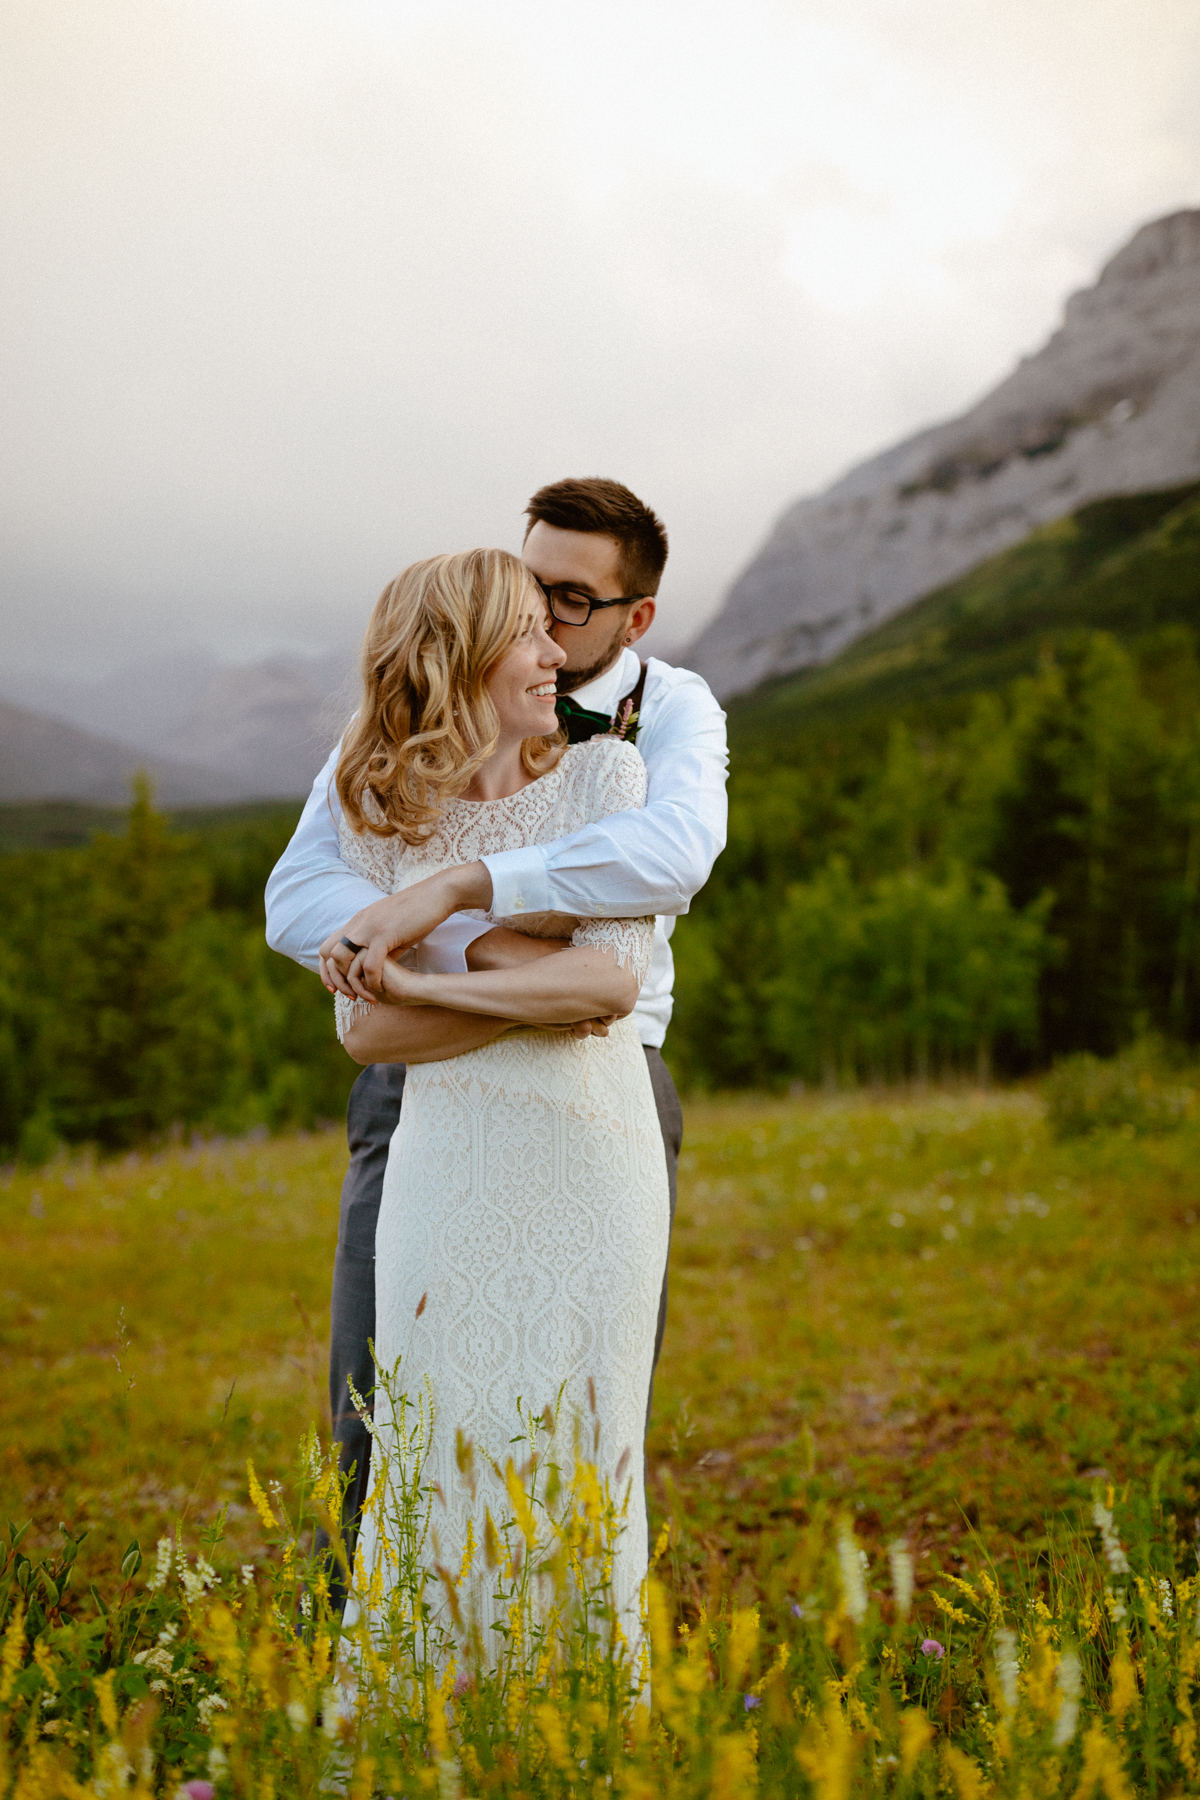 Kananaskis Wedding Photography at Pomeroy Mountain Lodge - Image  62